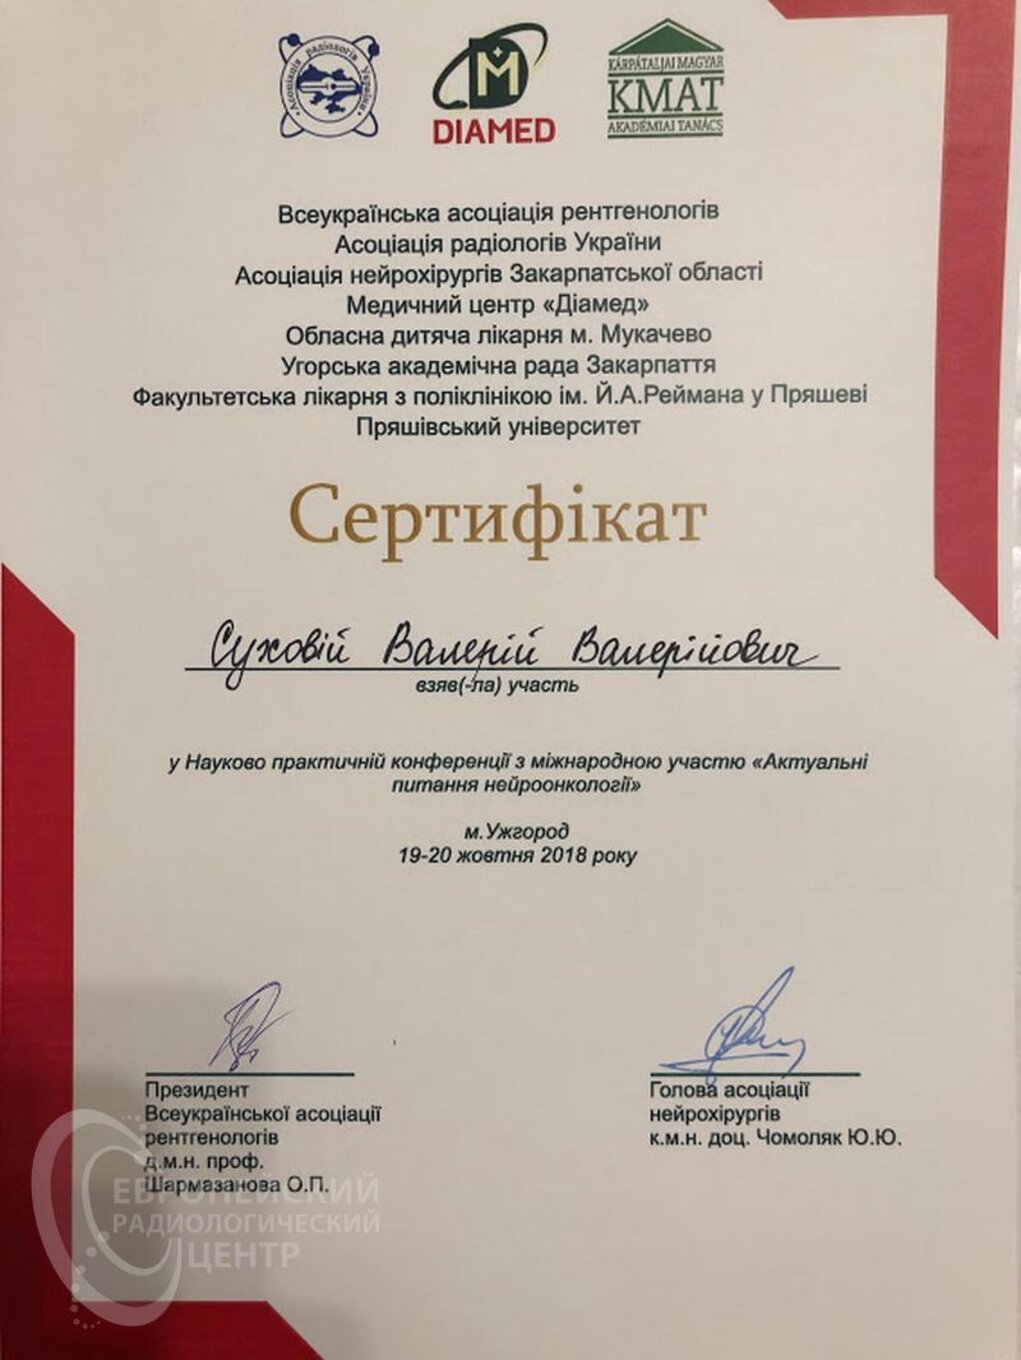 certificates/suhovej-valerij-valerijovich/erc-suhovej-certificates-04.jpg